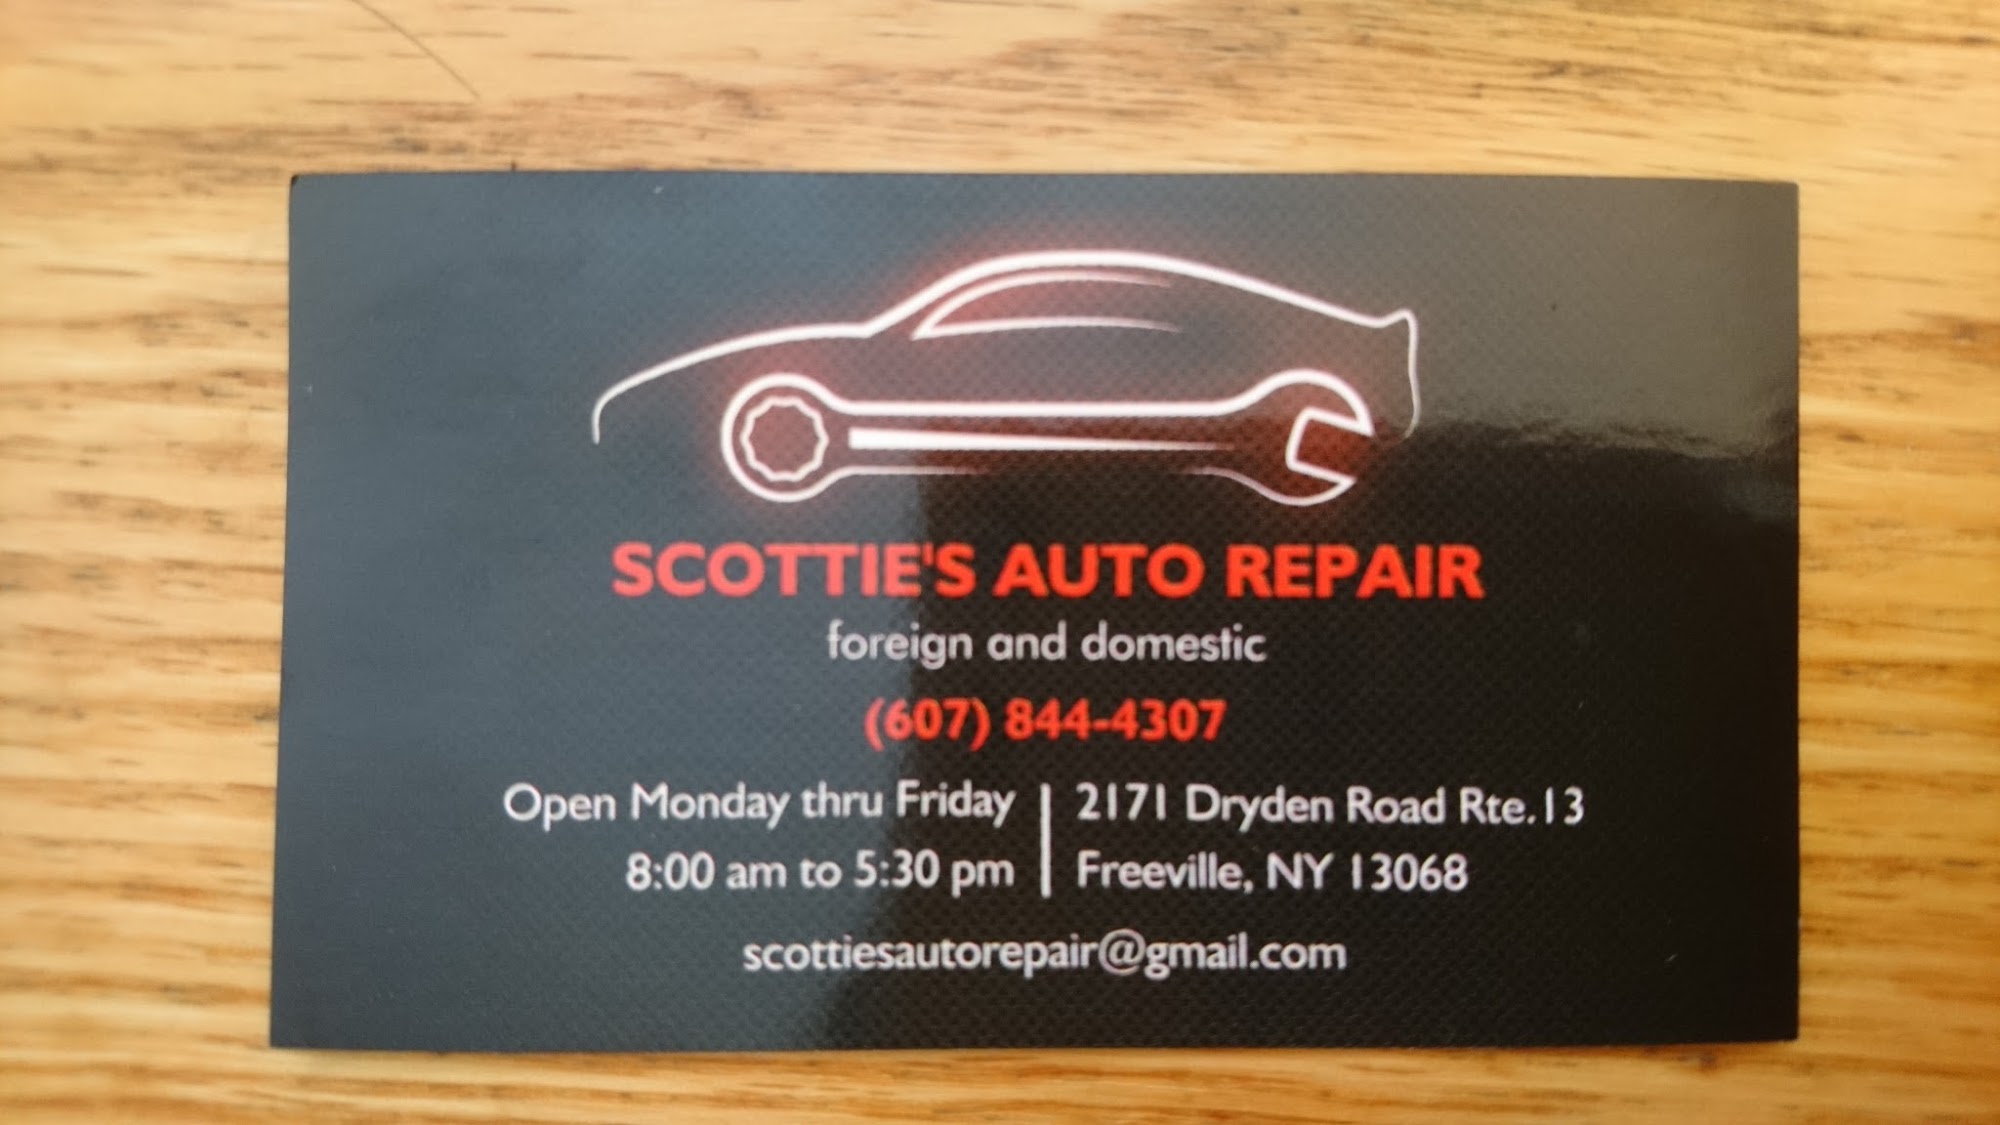 Scottie's Auto Repair